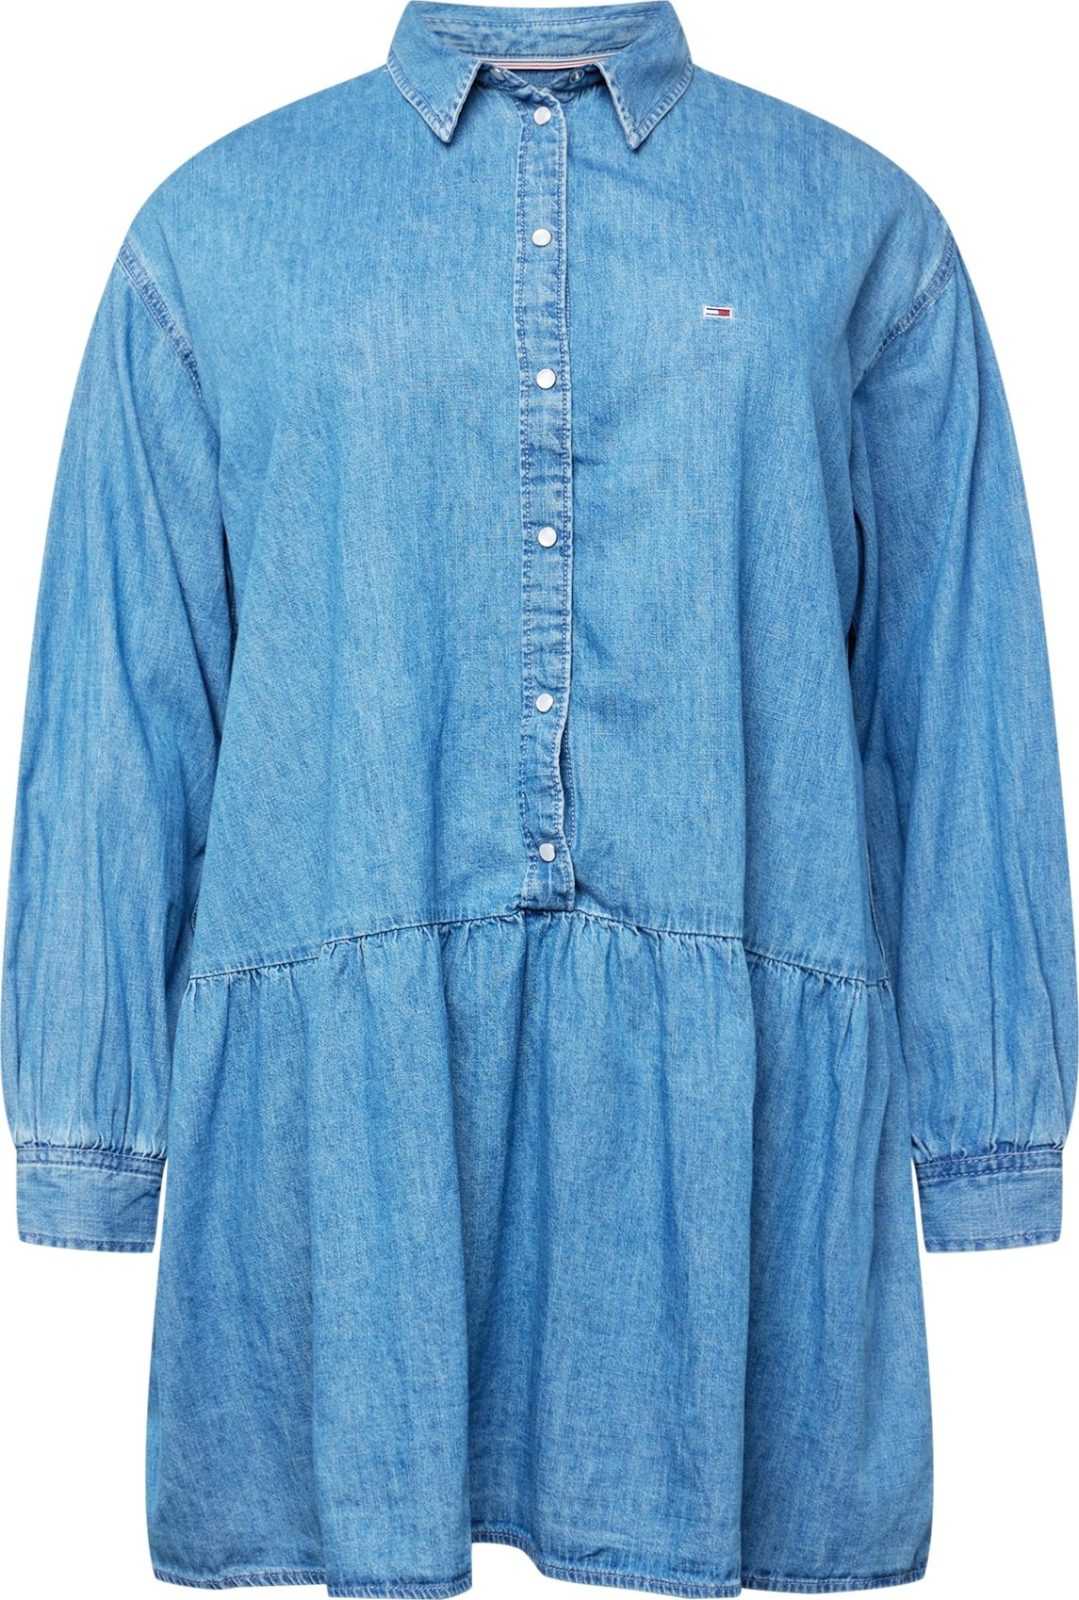 Tommy Jeans Curve Košilové šaty 'CHAMBRAY' námořnická modř / modrá džínovina / červená / bílá